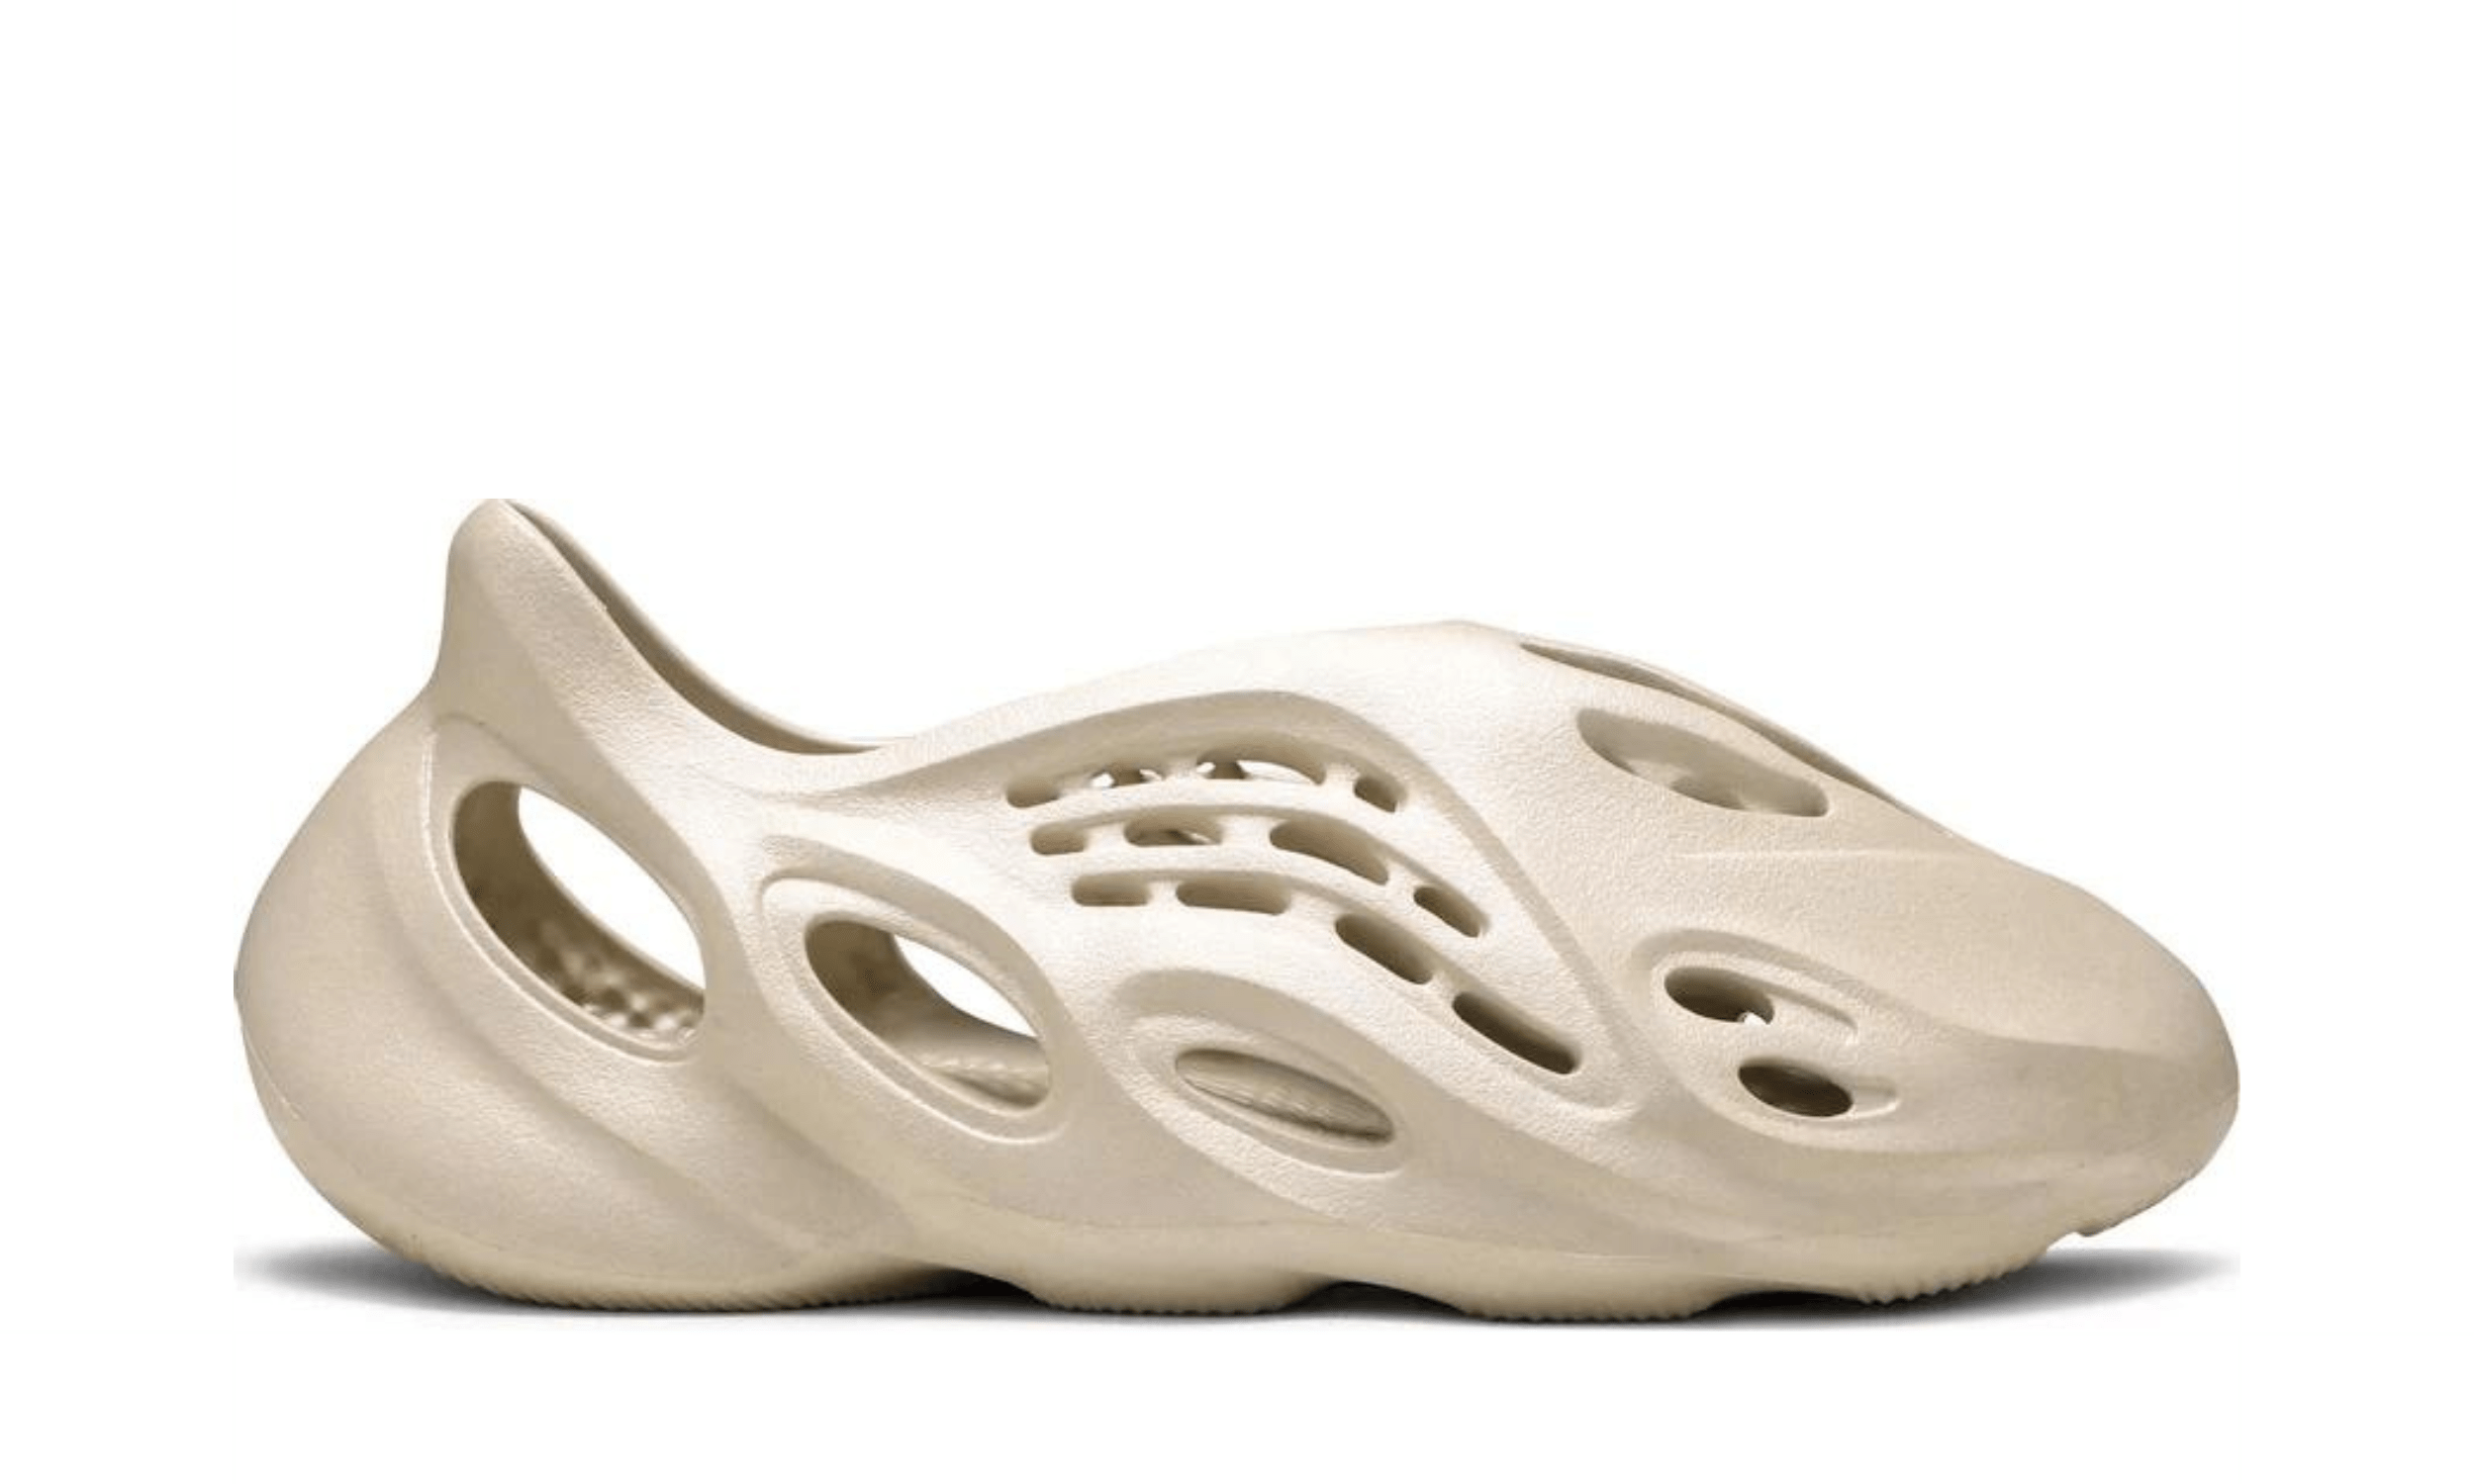 Yeezy Foam Runner Sand - Kicksite - FY4567